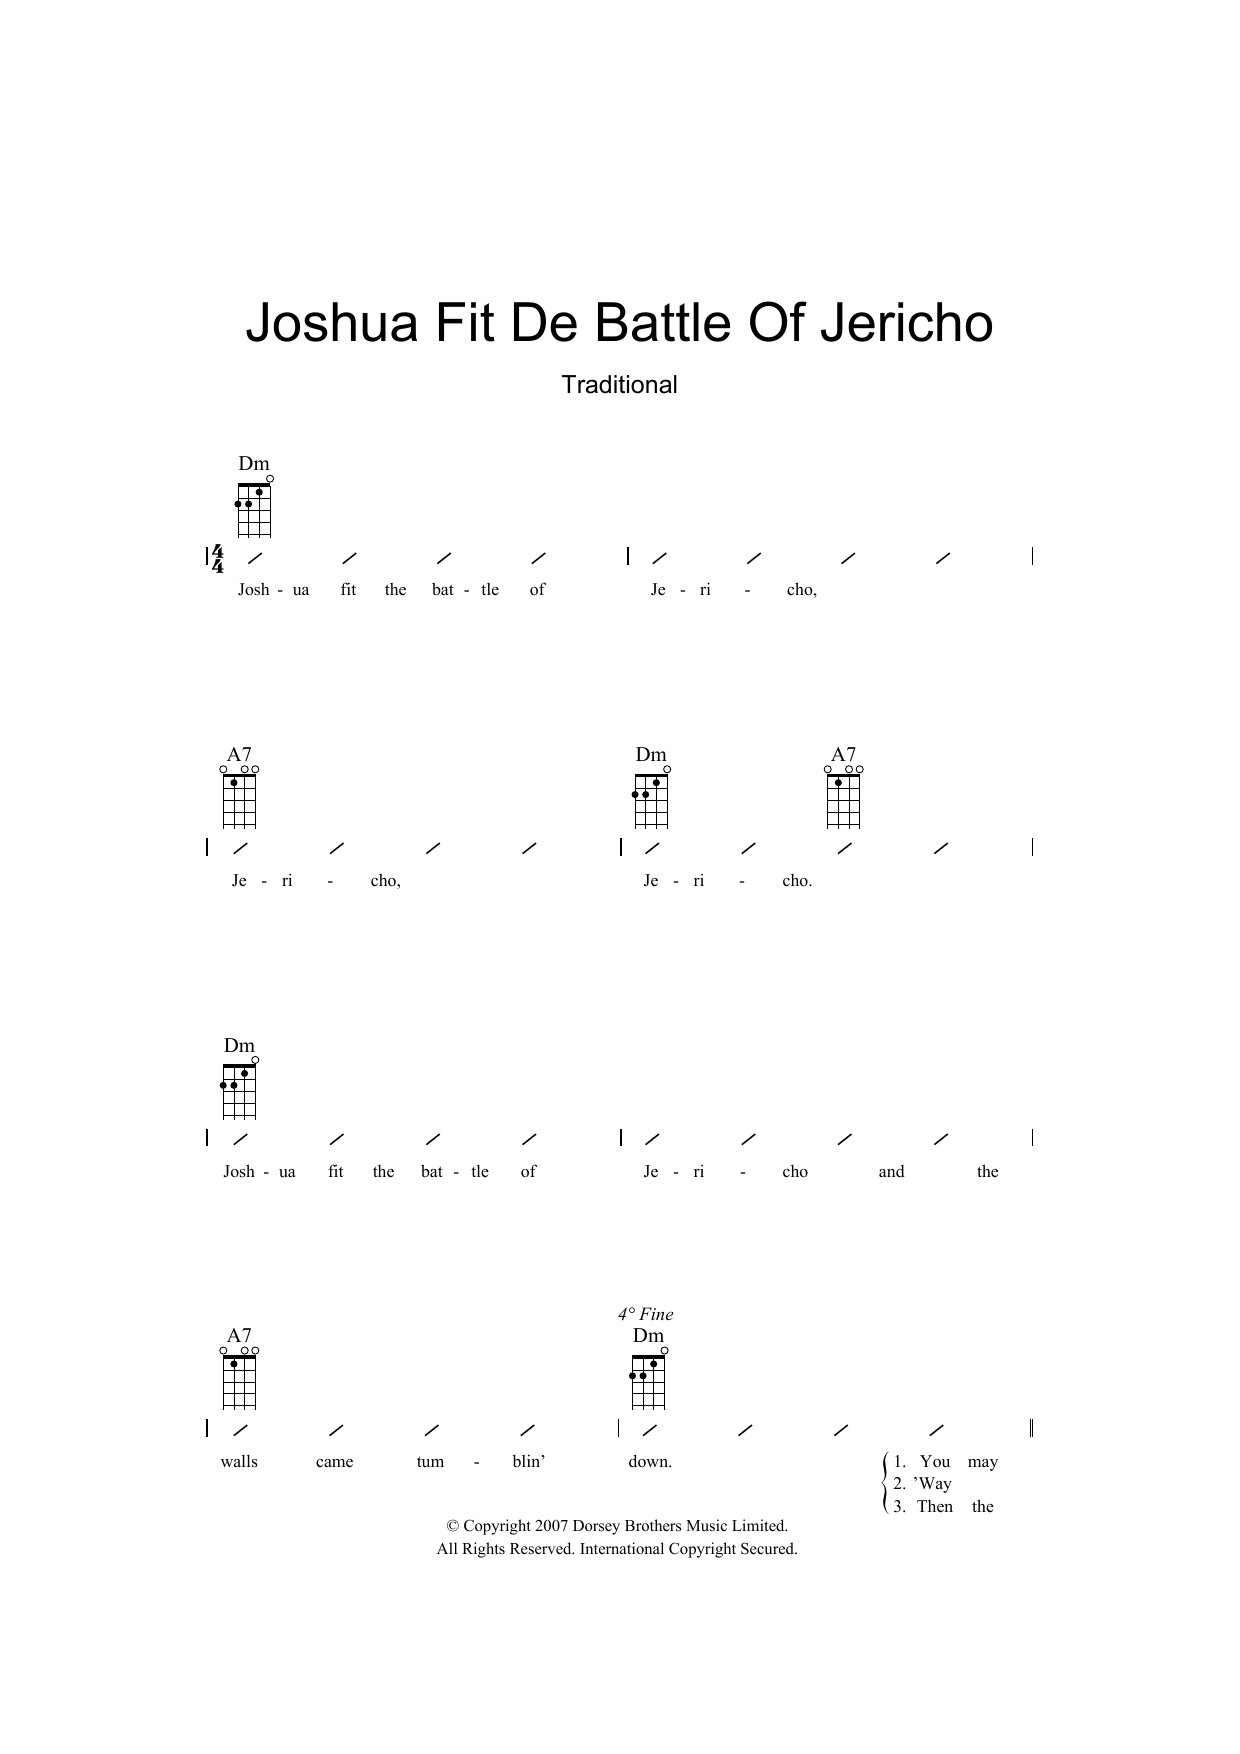 Traditional Joshua Fit De Battle Of Jericho sheet music notes and chords arranged for Ukulele Chords/Lyrics